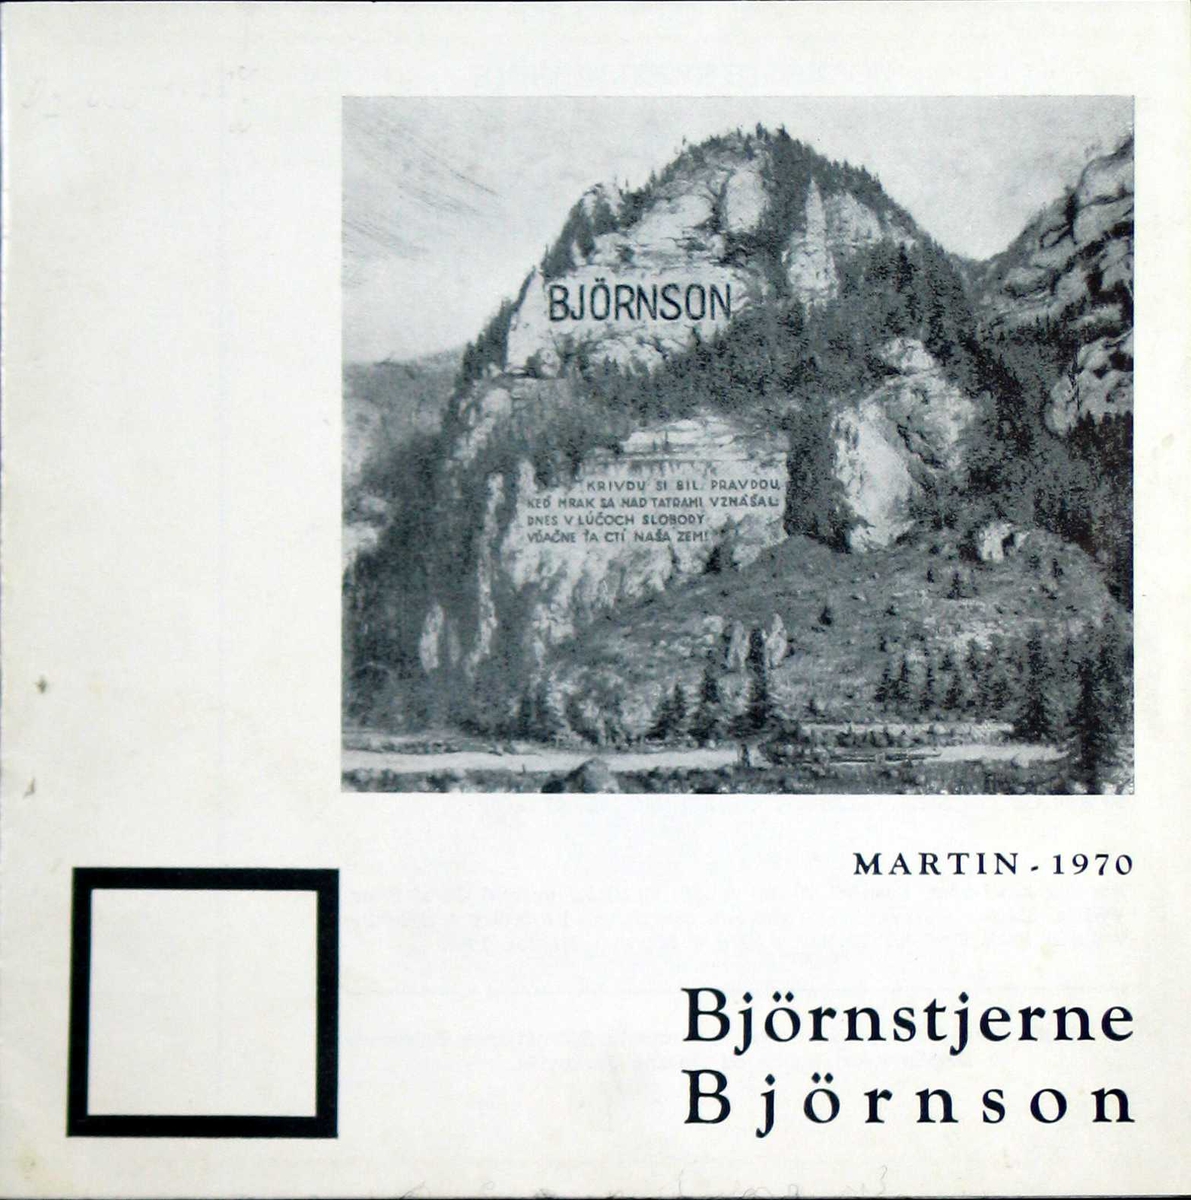 Forsiden viser det påtenkte Bjørnson-minnesmerke. Katalogen har et kort sammendrag på englesk bakerst. 10 sider.